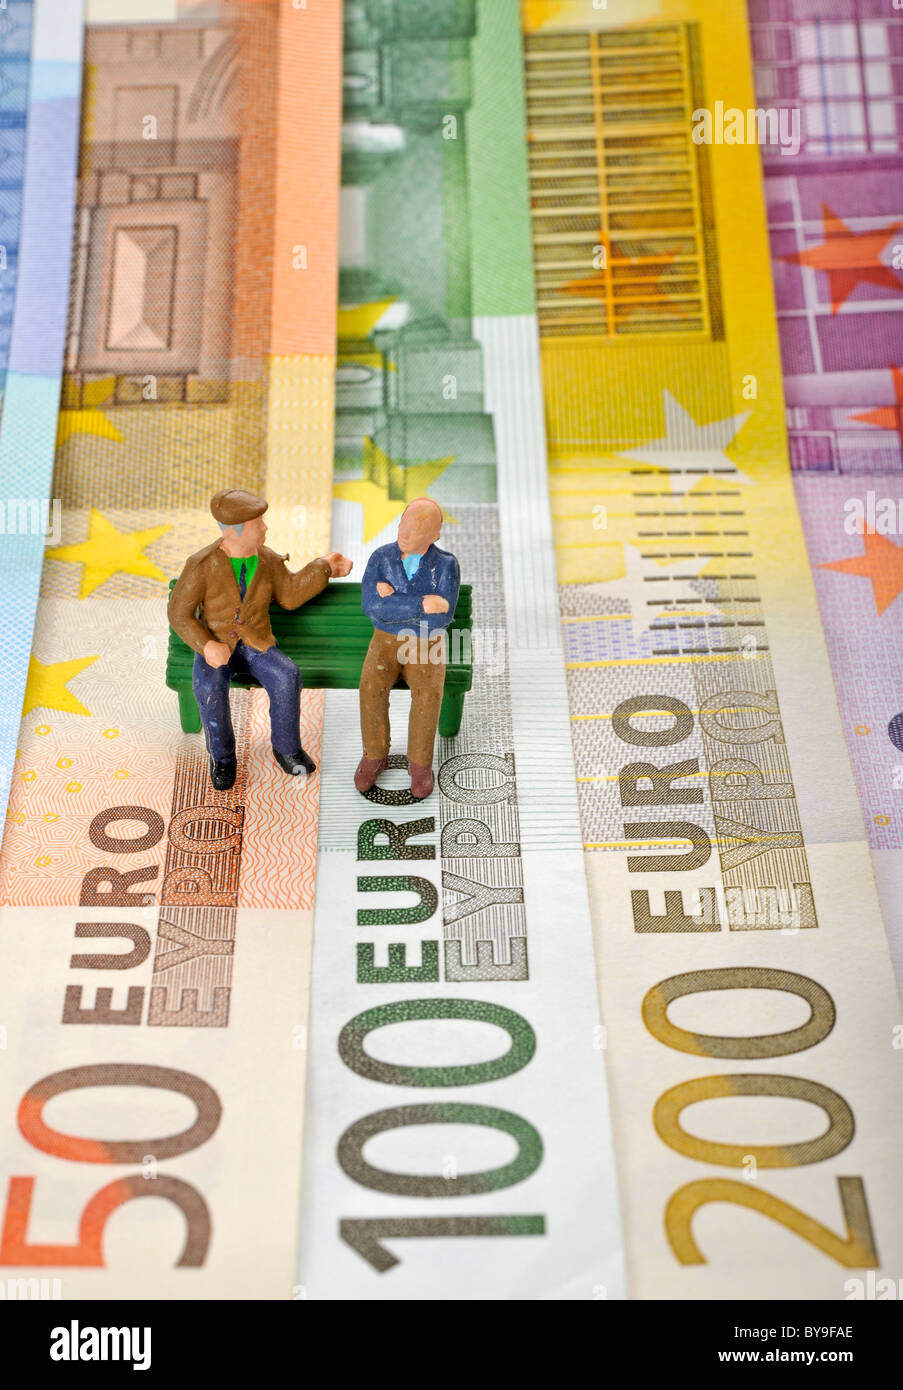 Varie banconote in euro con figure in miniatura di cittadini anziani su una panchina nel parco, immagine simbolica per la pensione o pensione di Foto Stock